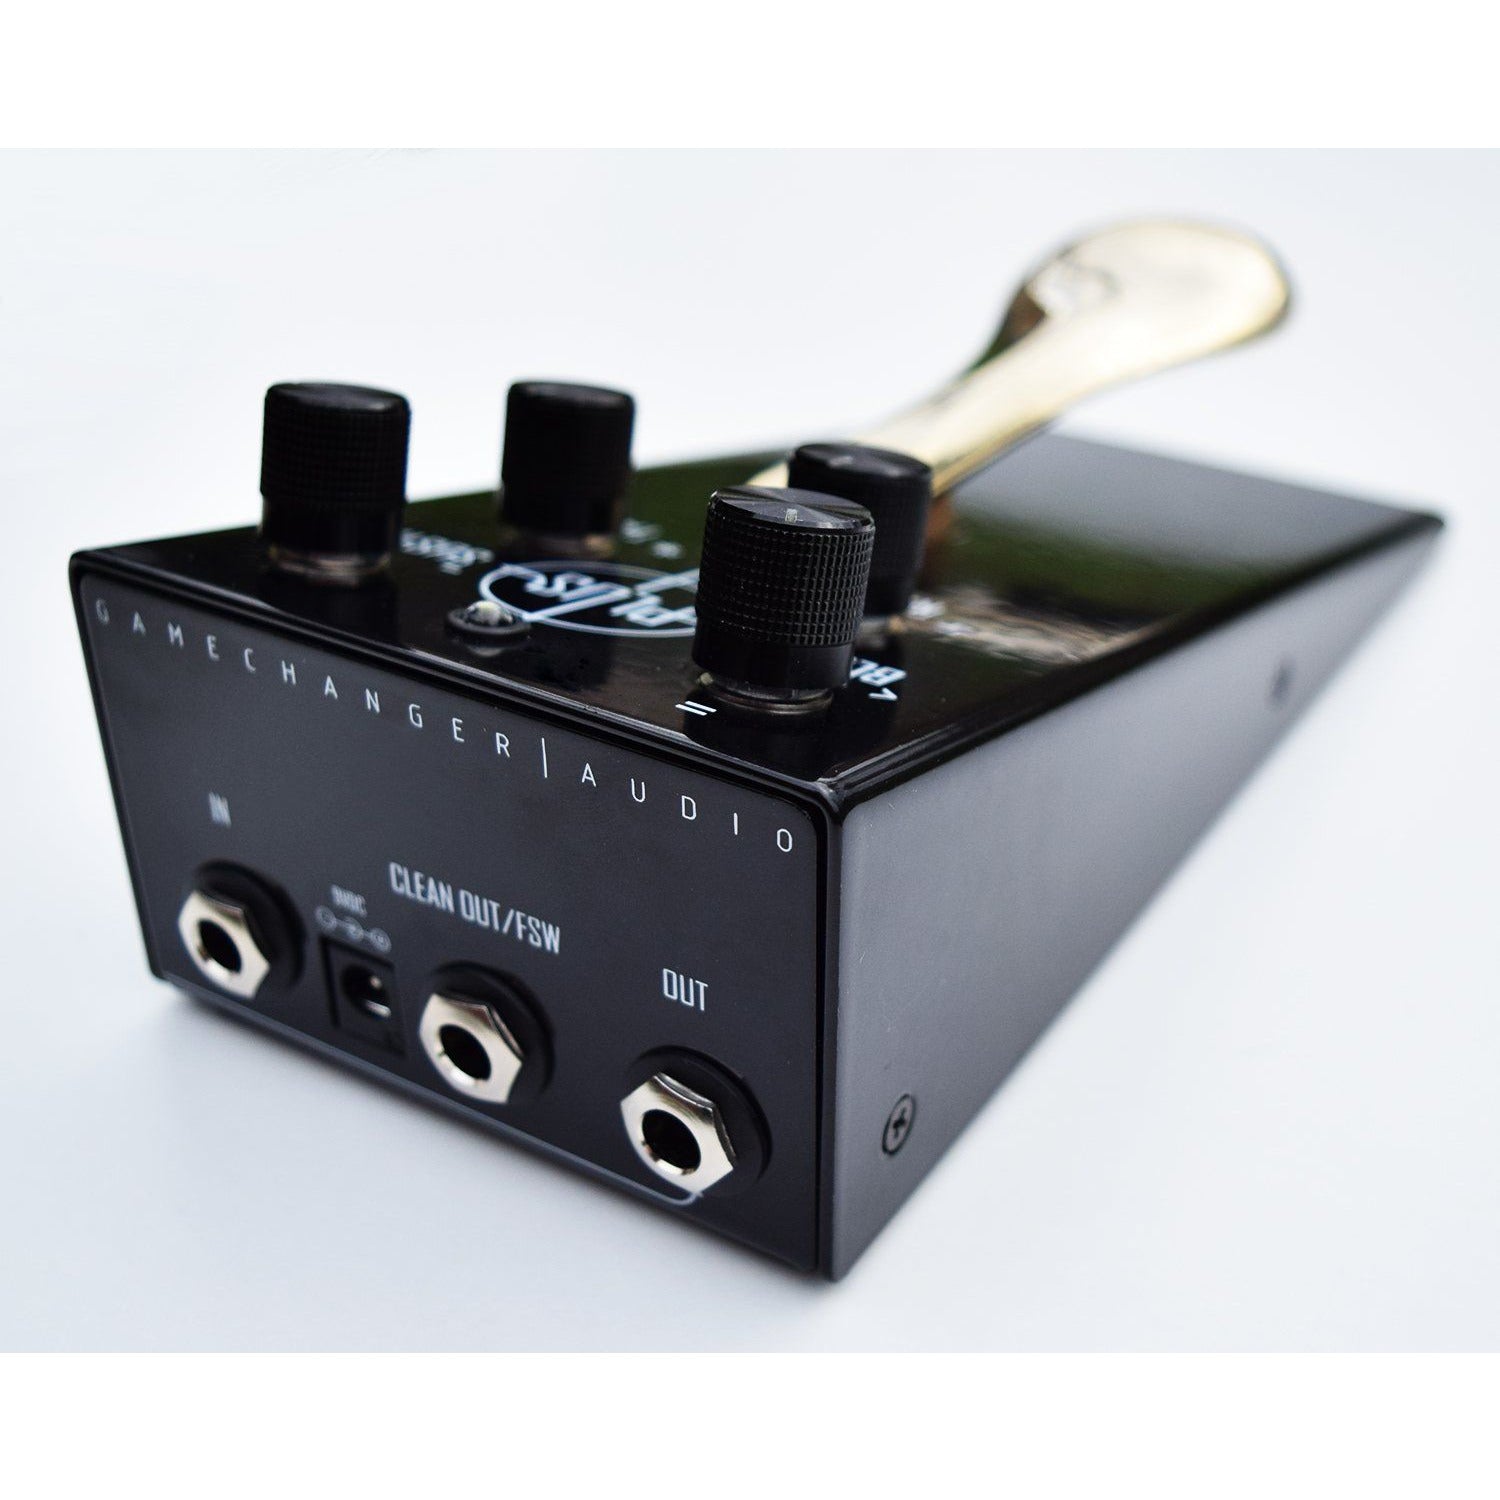 Gamechanger Audio Plus Pedal - The Sound Parcel